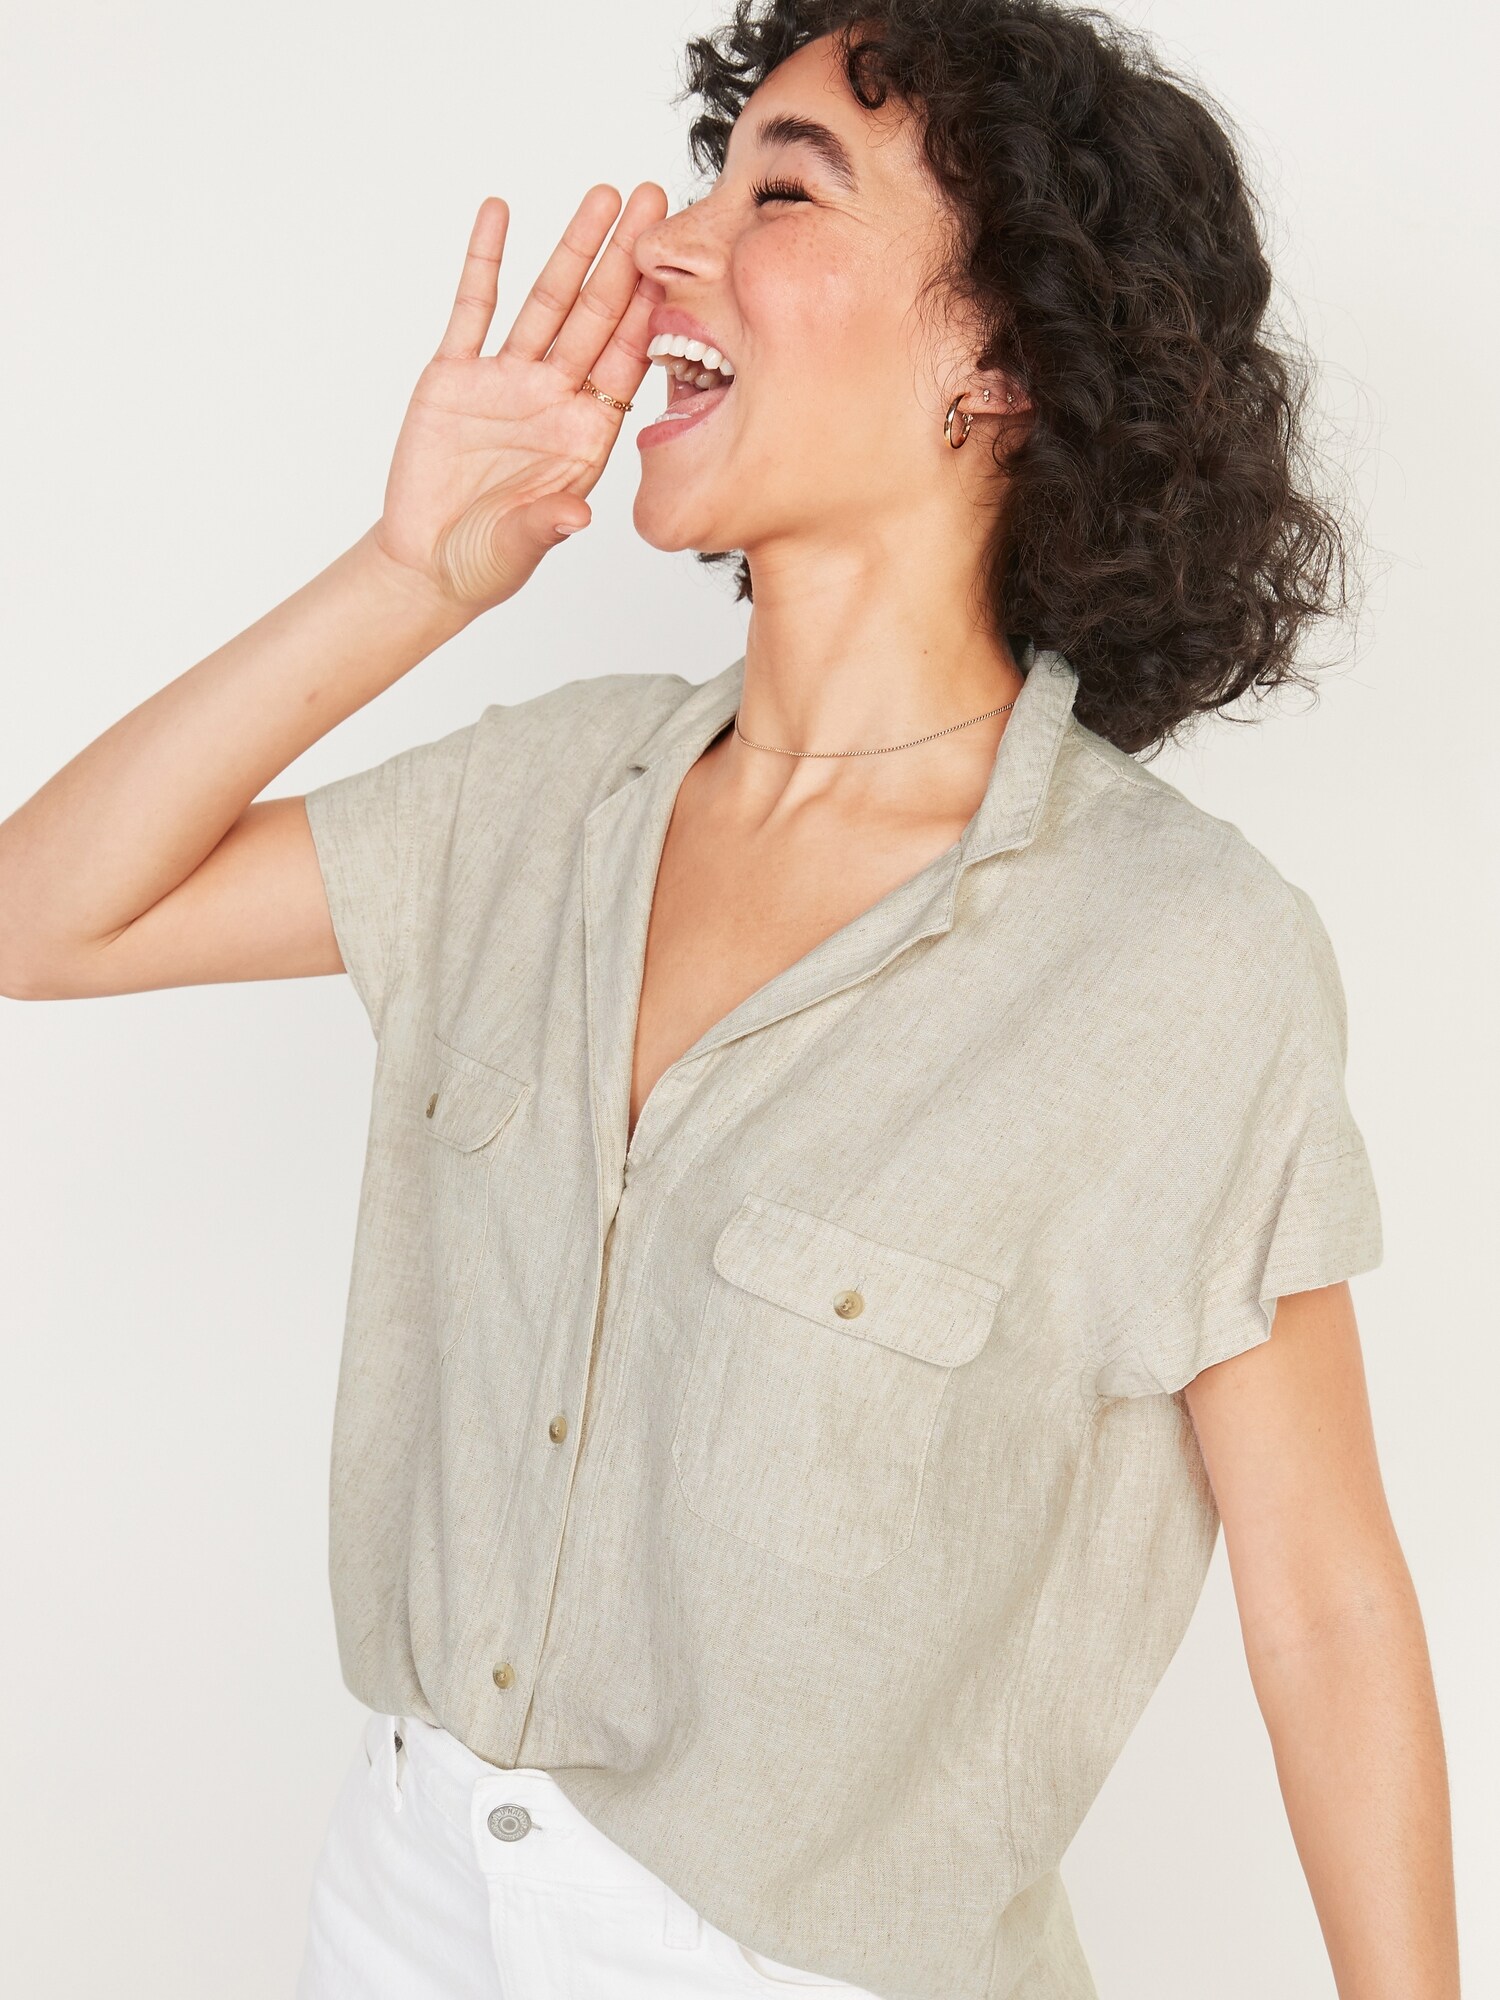 Short sleeve linen-blend shirt - Women